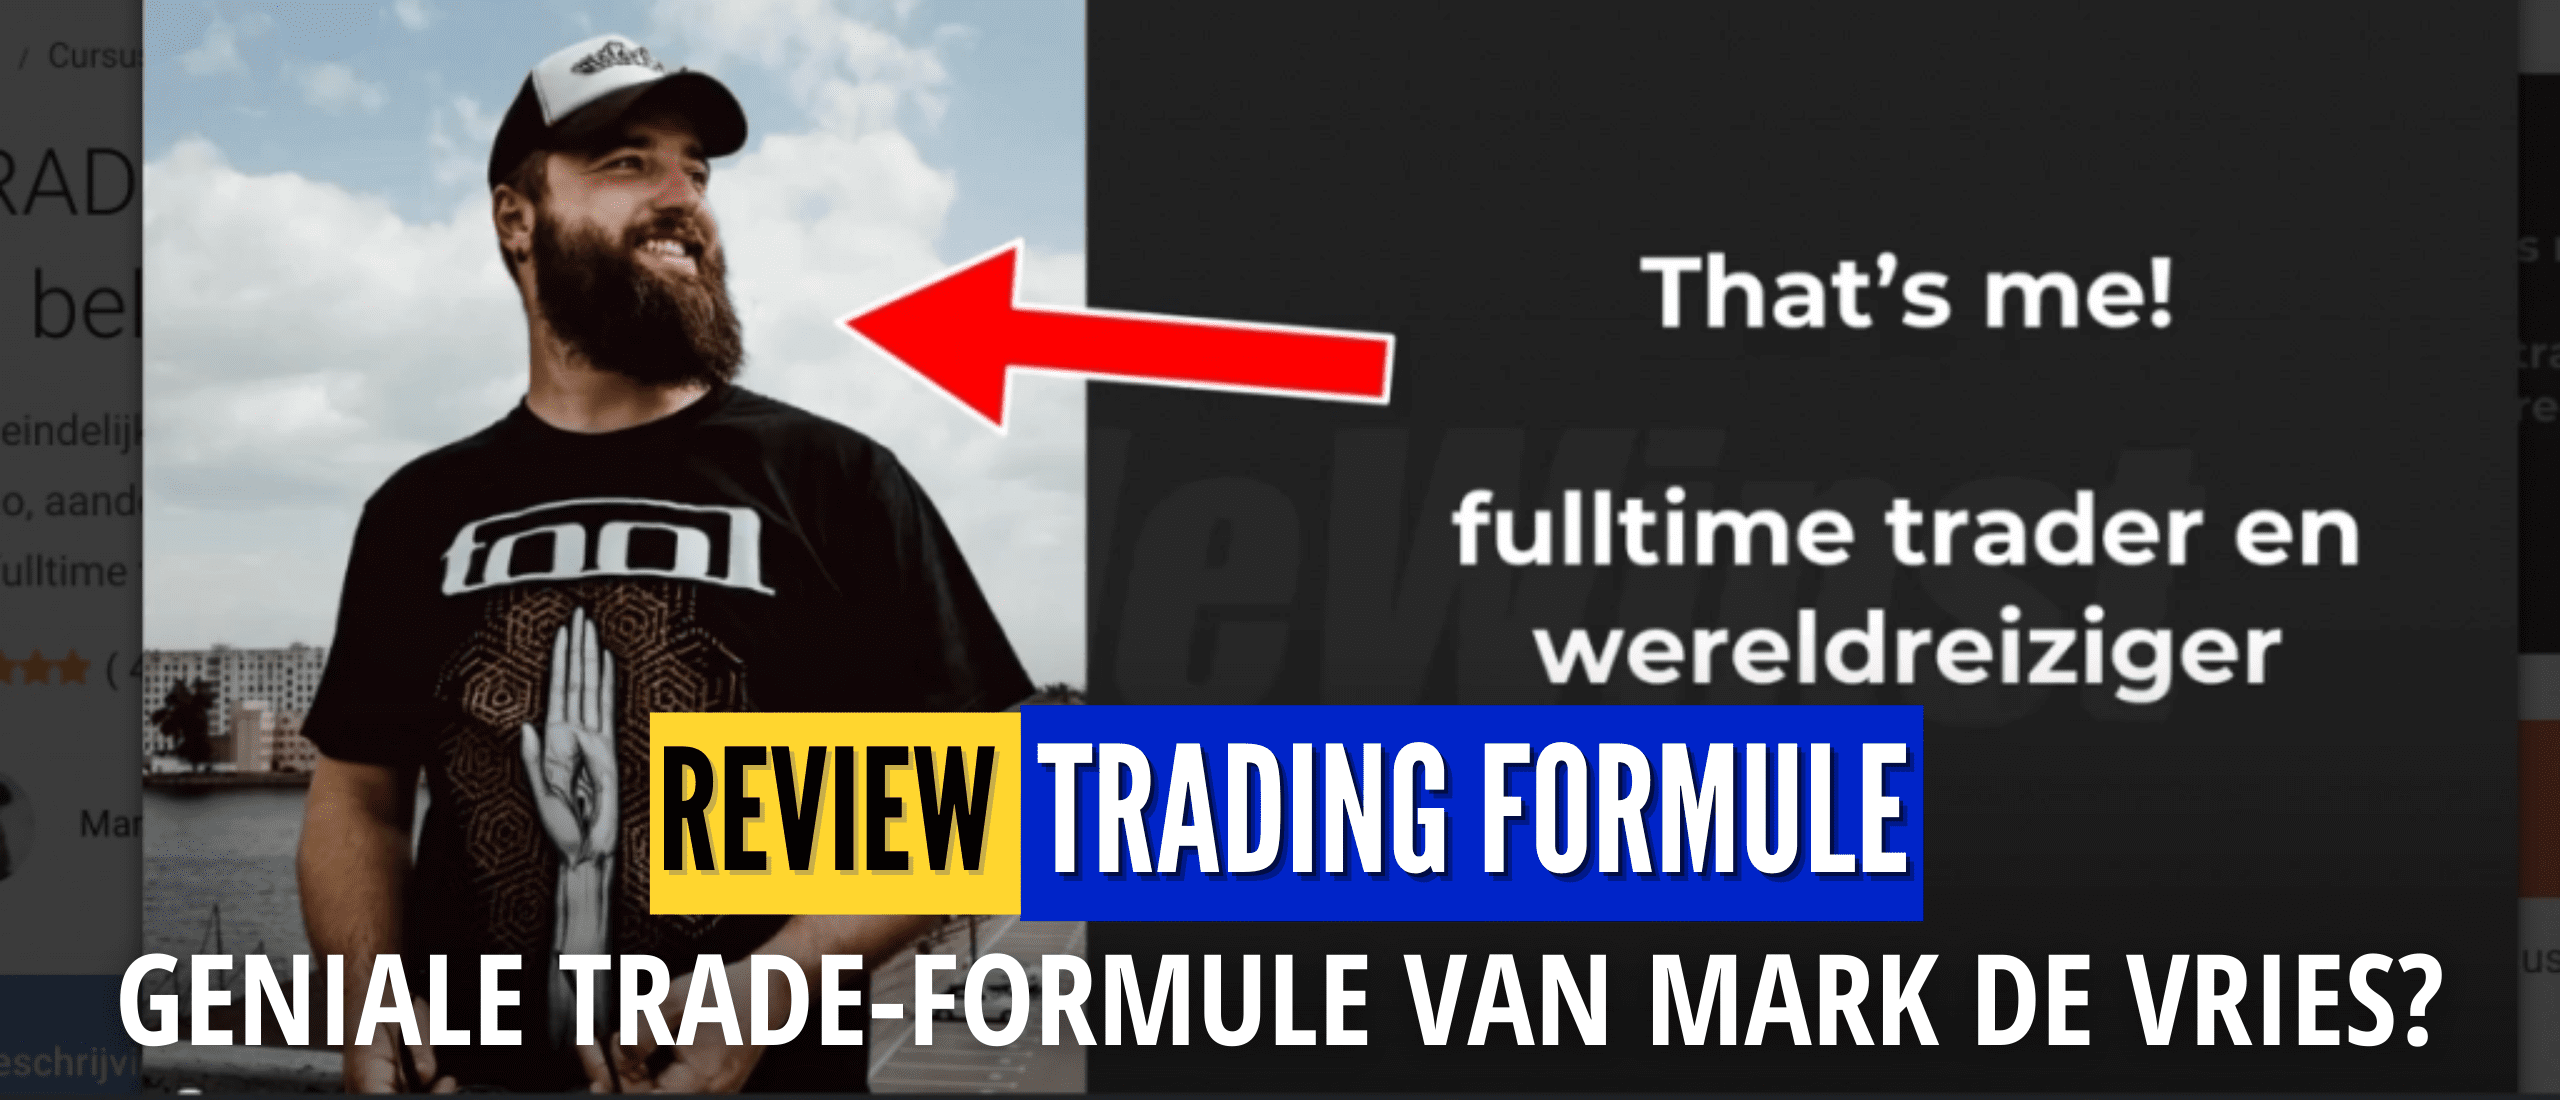 trading-formule-ervaringen